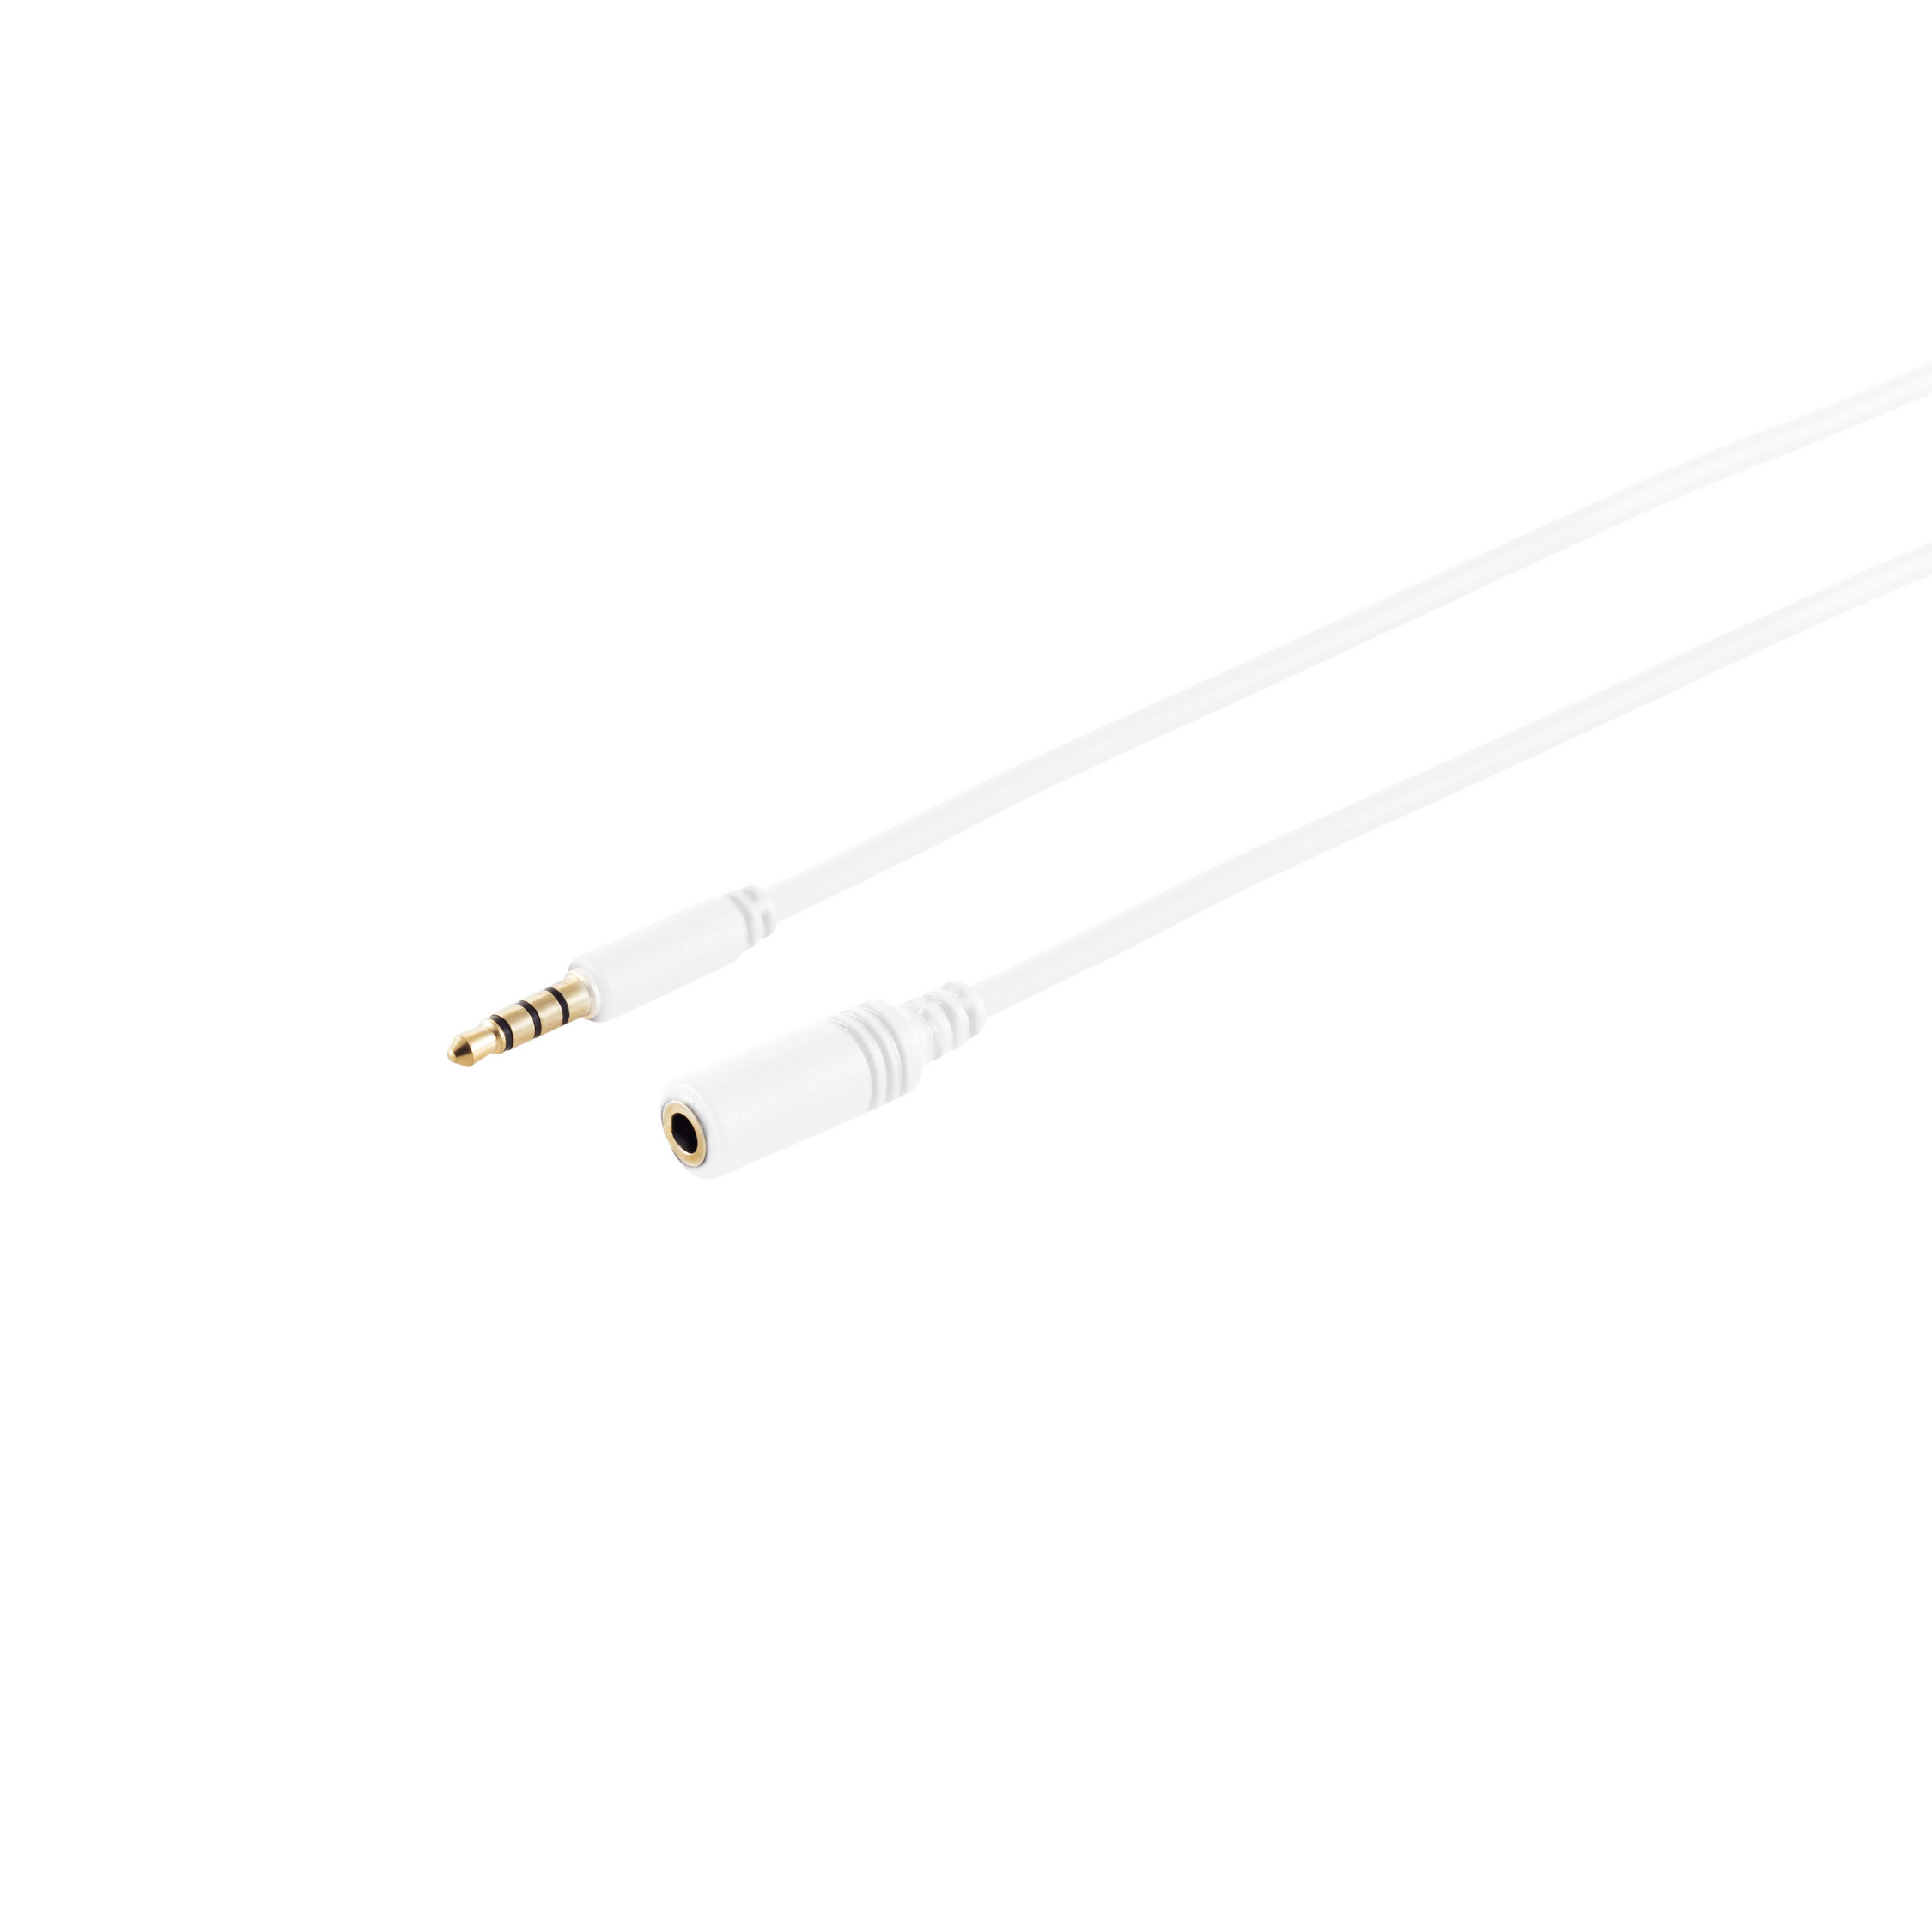 KABELBUDE 4-pol, 3,5mm m Stecker/Buchse, verg. 0,5m, Klinkenverlängerung, 0,50 weiß